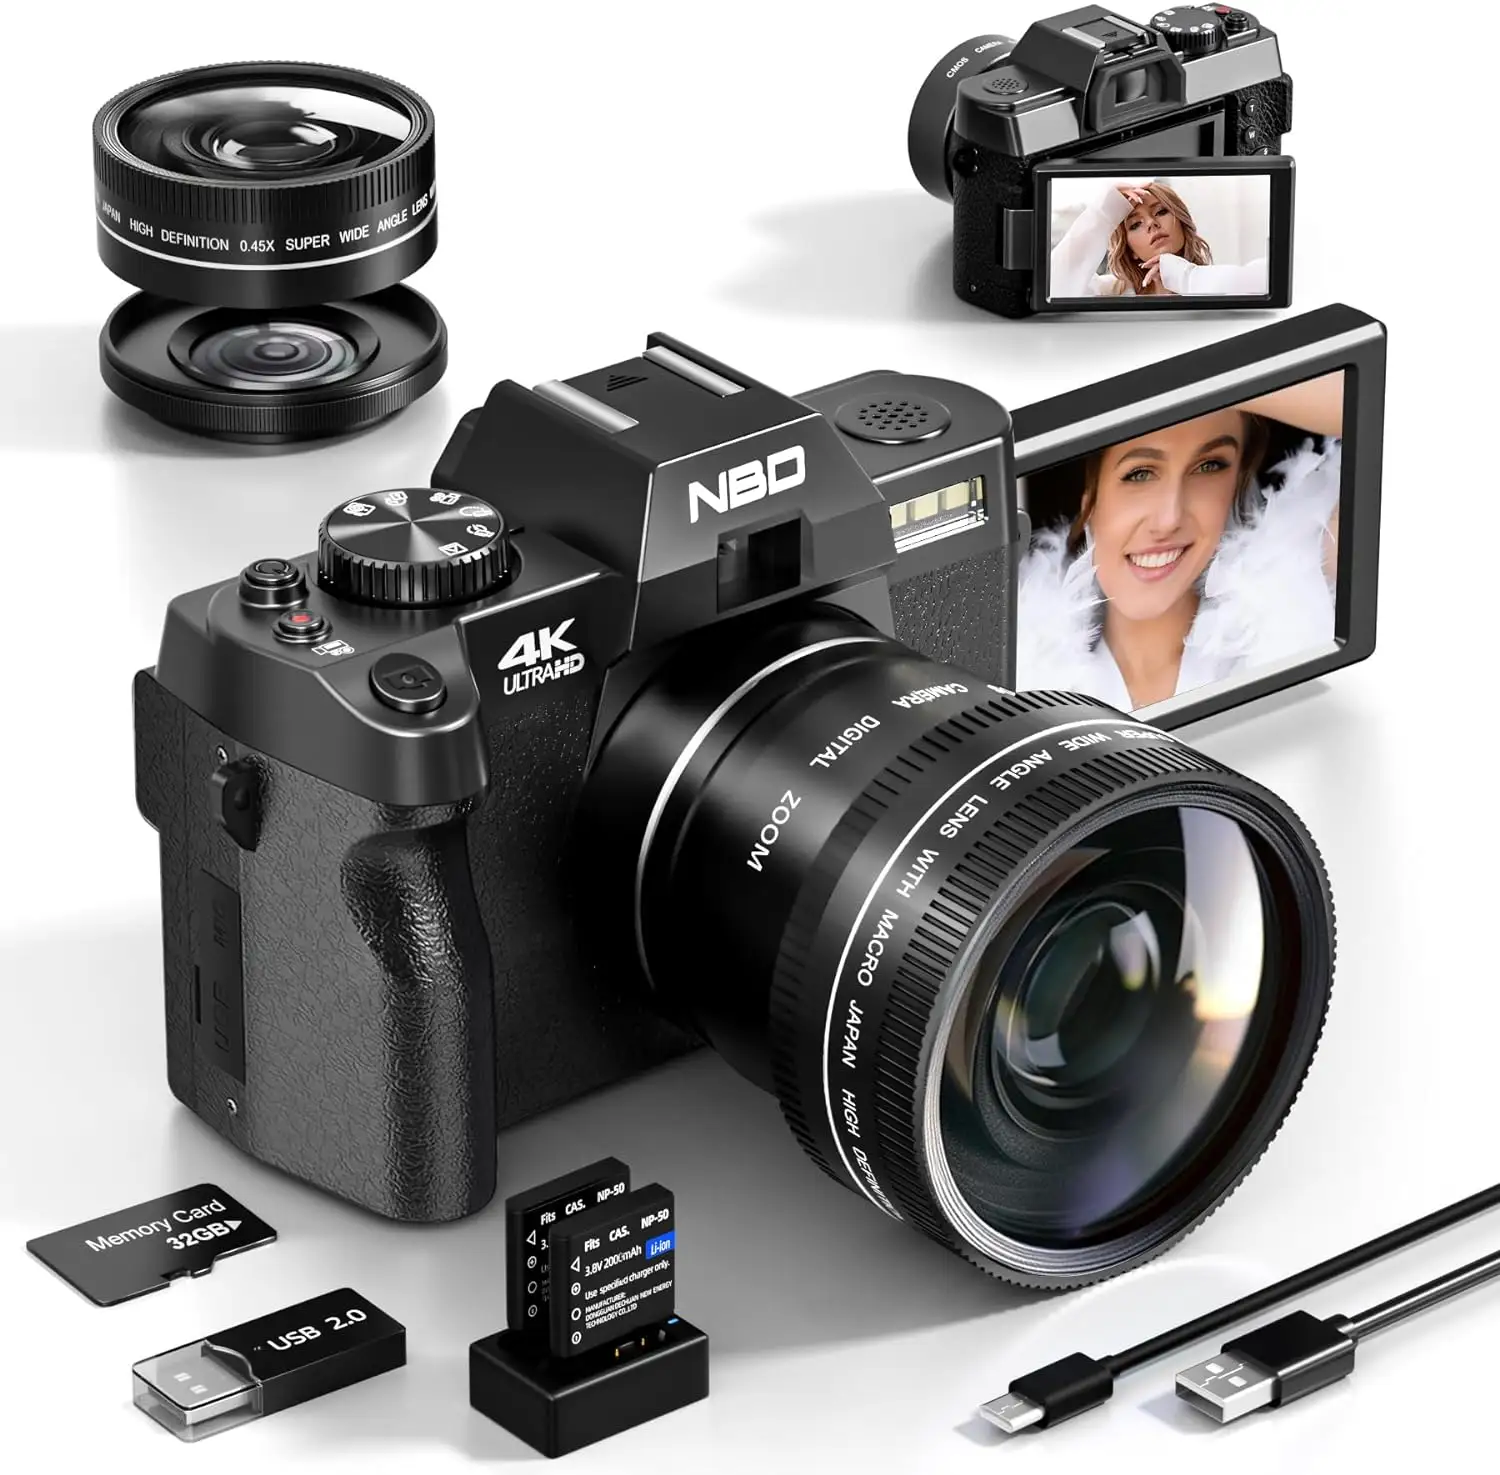 NBD kamera 3 inci layar isi ulang 48 MP mega piksel 16x zoom digital kamera Digital perekam video 4K